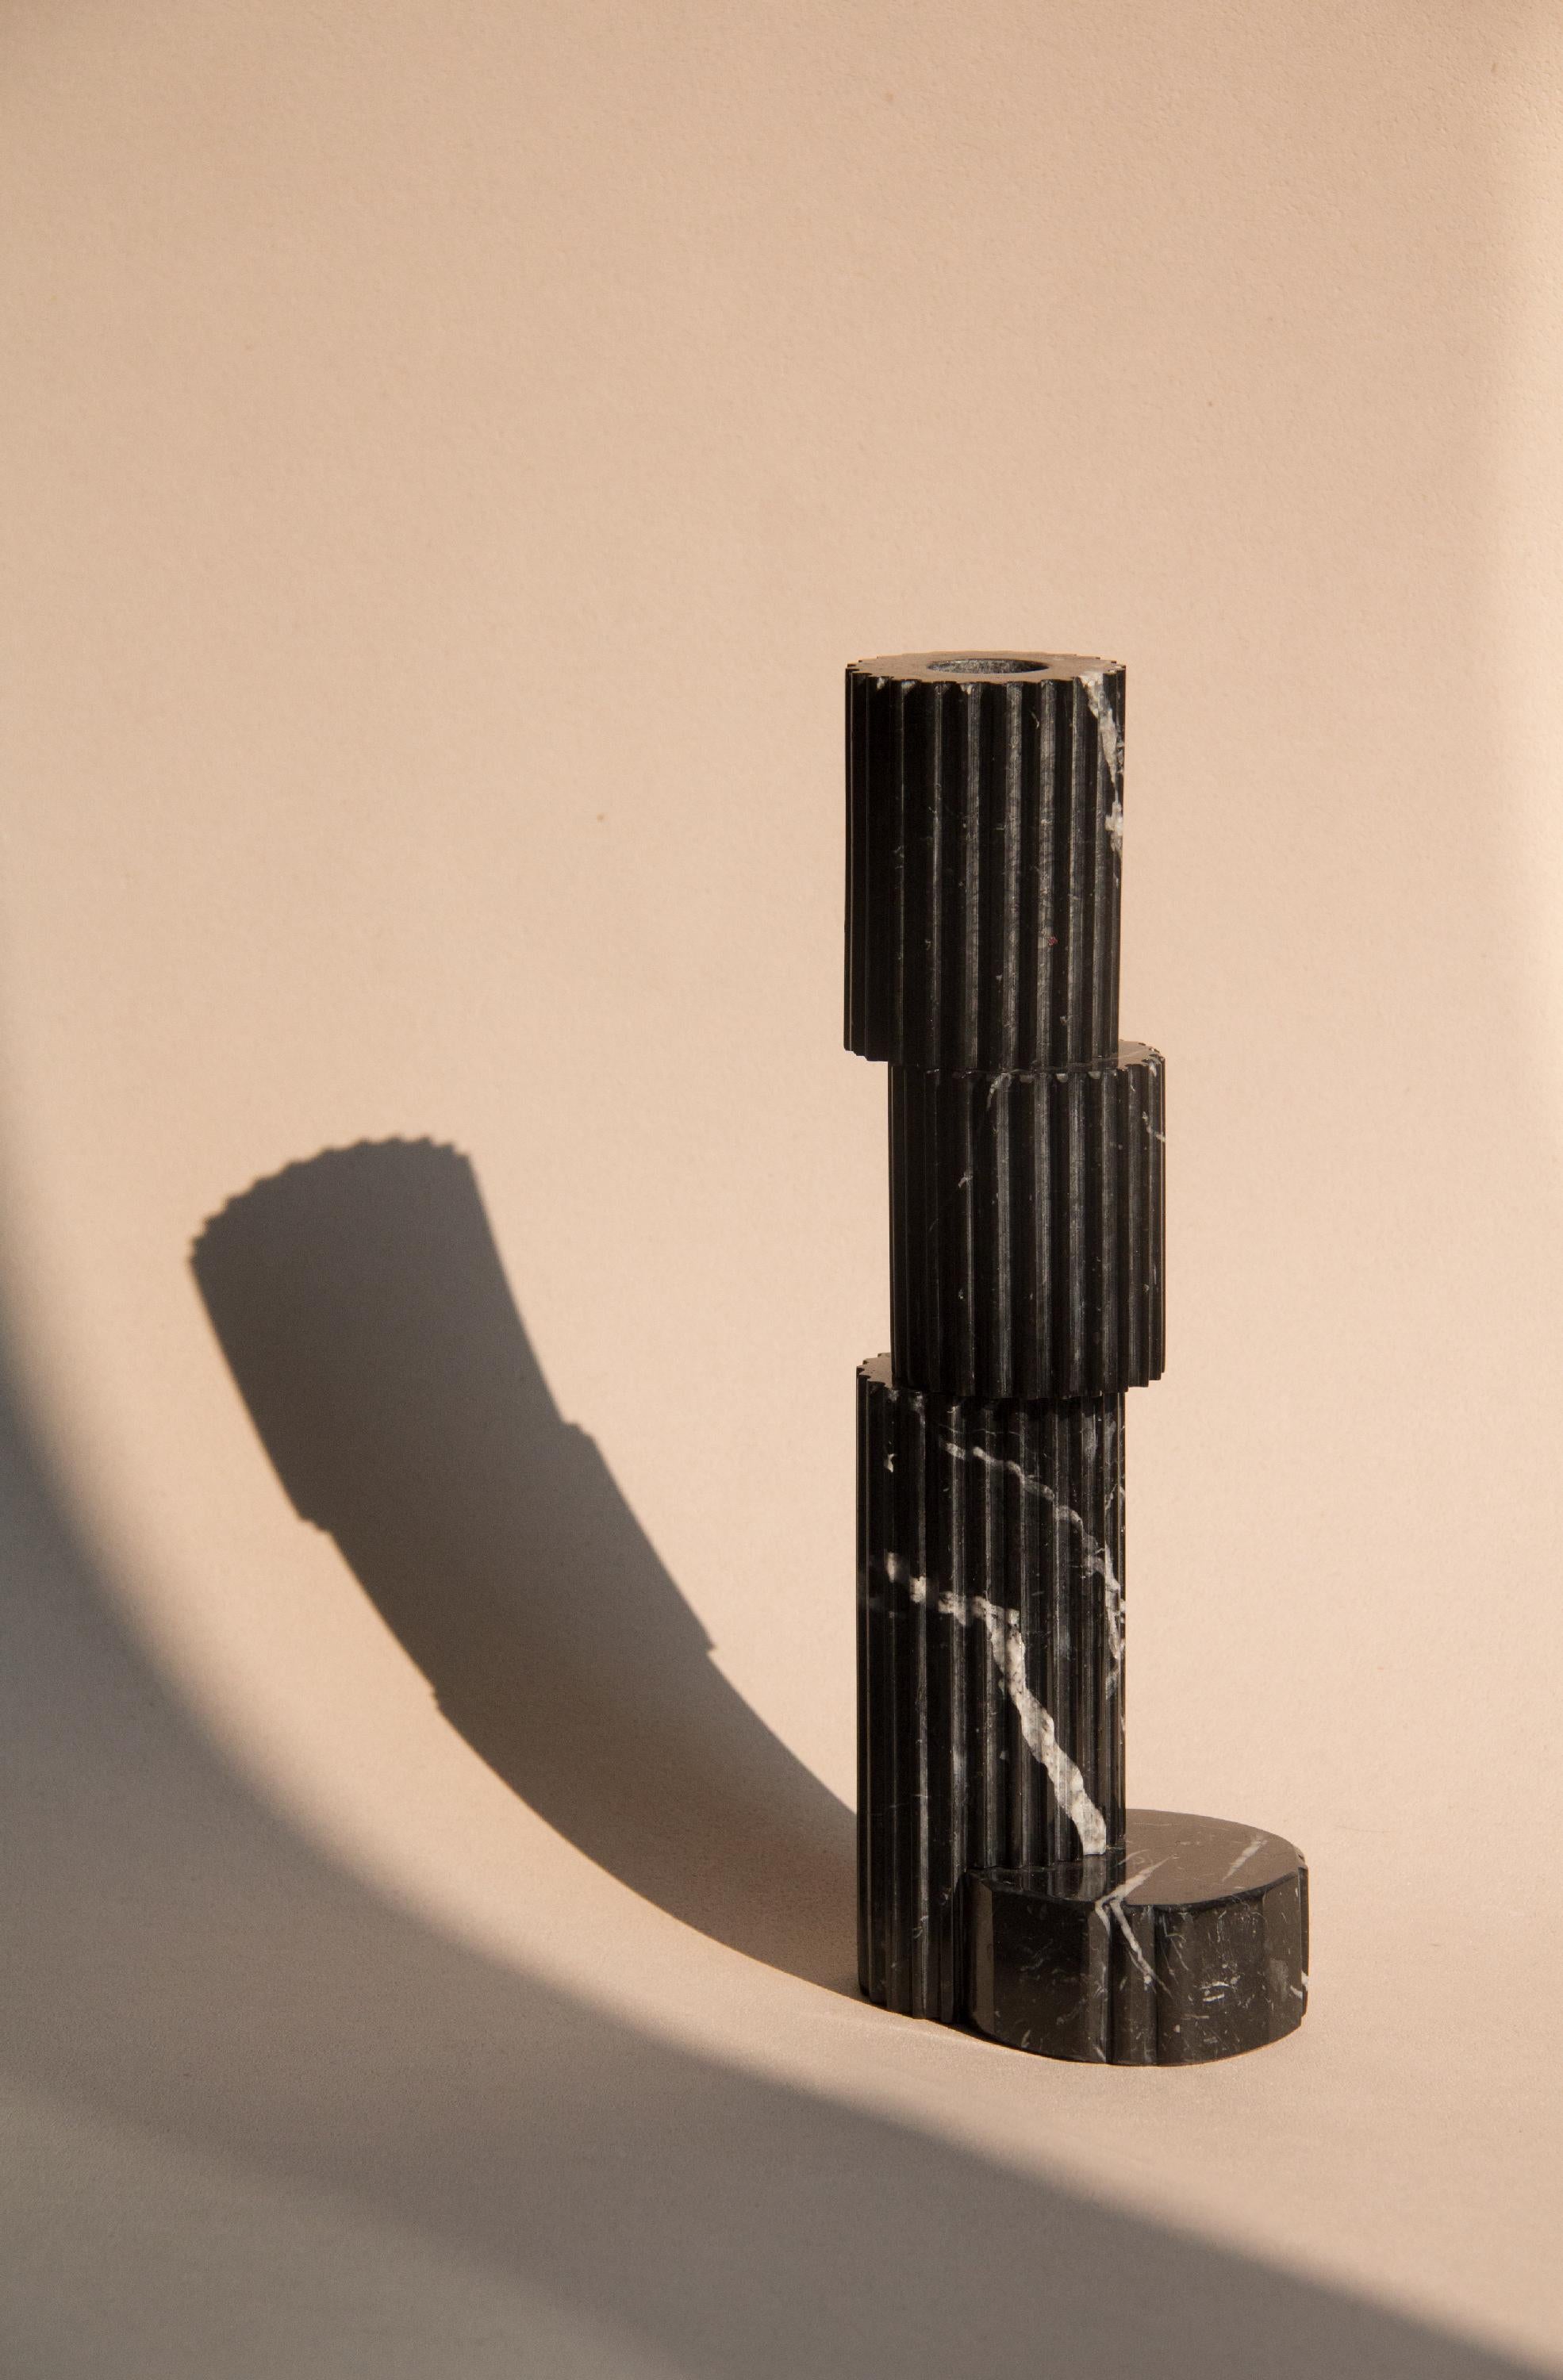 1 JETZT AUF LAGER ERHÄLTLICH von diesen Rovinette-Kerzenhaltern aus schwarzem Marmor des 21. Jahrhunderts, handgefertigt in Italien von Ilaria Bianchi.

Handgedrehter Kerzenhalter aus schwarzem Marquinia-Marmor, hergestellt von italienischen